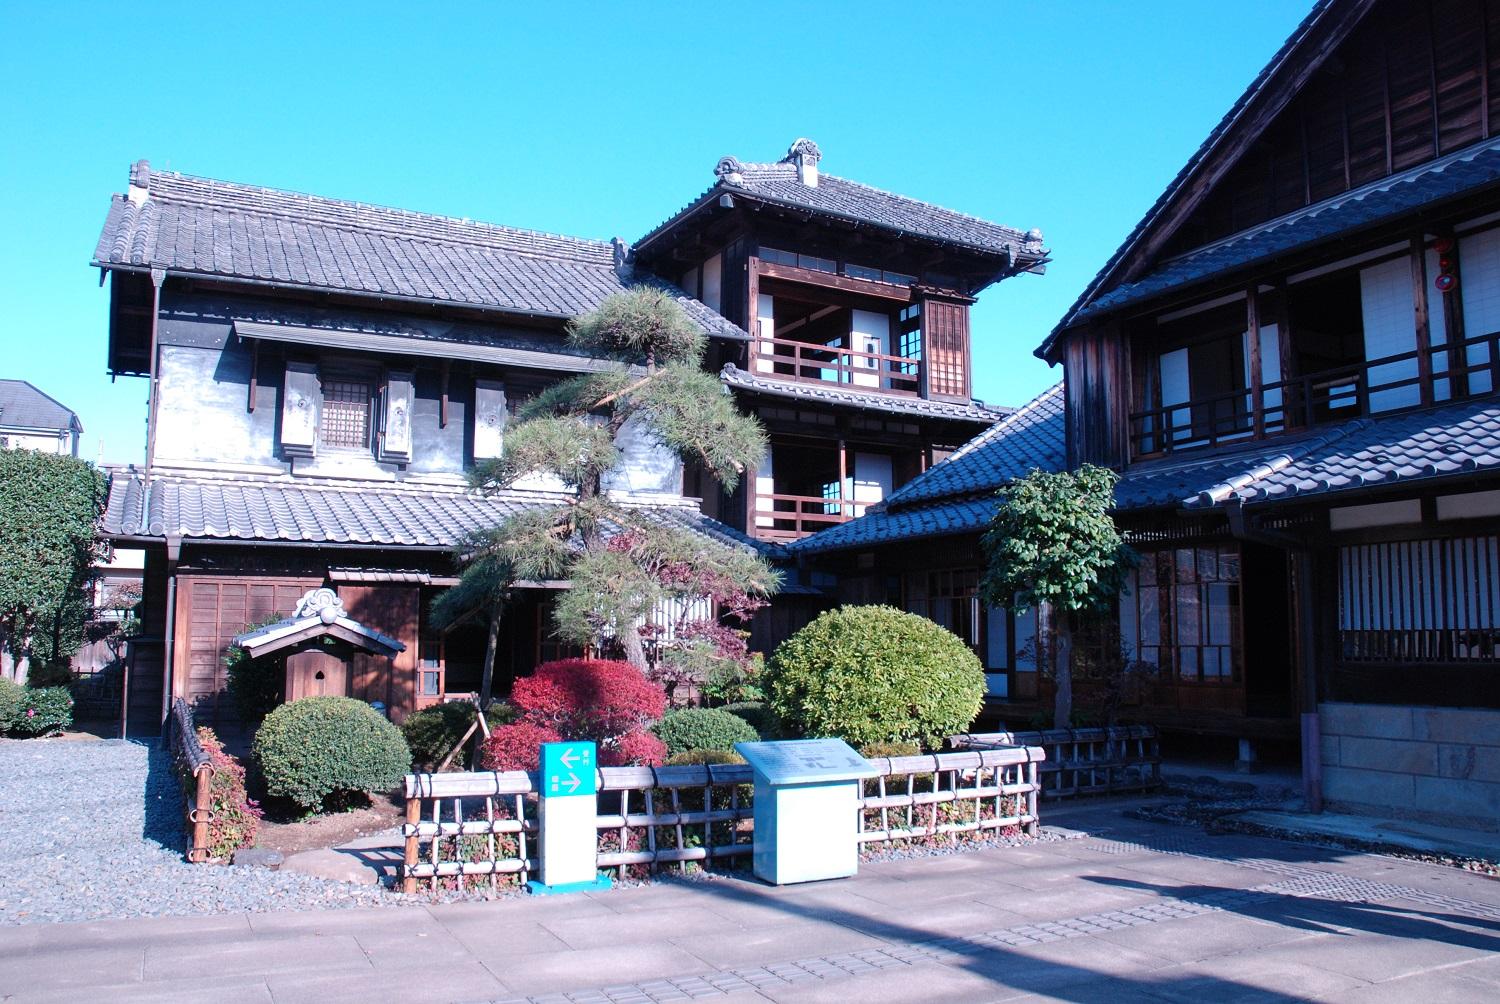 青い空を背景に、松の木と赤や緑の庭木が植えられたお庭とその奥に建つ3階建て古民家の写真